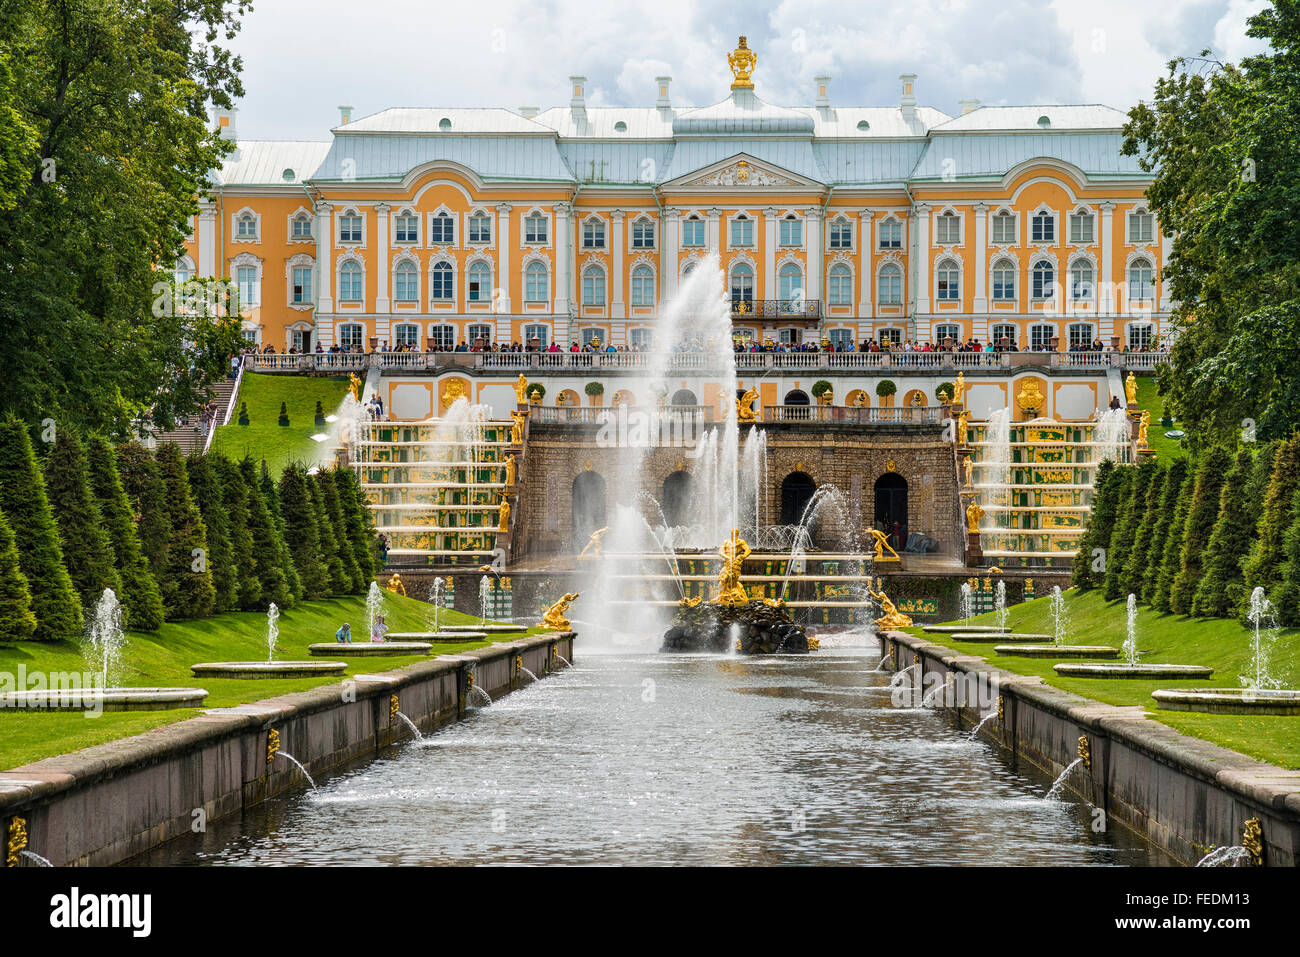 El Grand Palace y el gran cascada del Palacio Peterhof, Petergof, San Petersburgo, Rusia Foto de stock